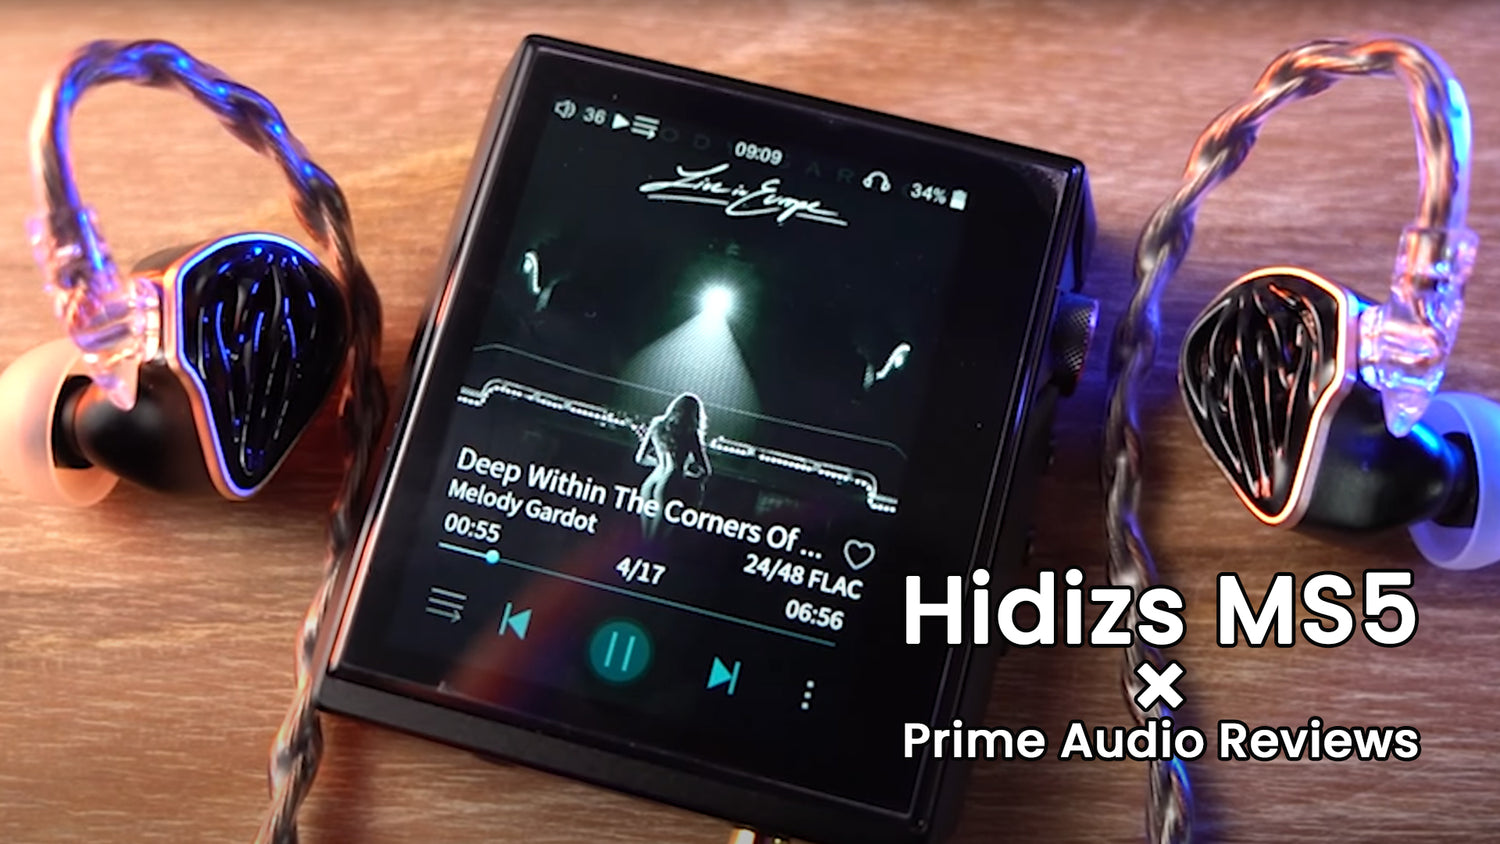 Hidizs MS5 reviews-Prime Audio Reviews